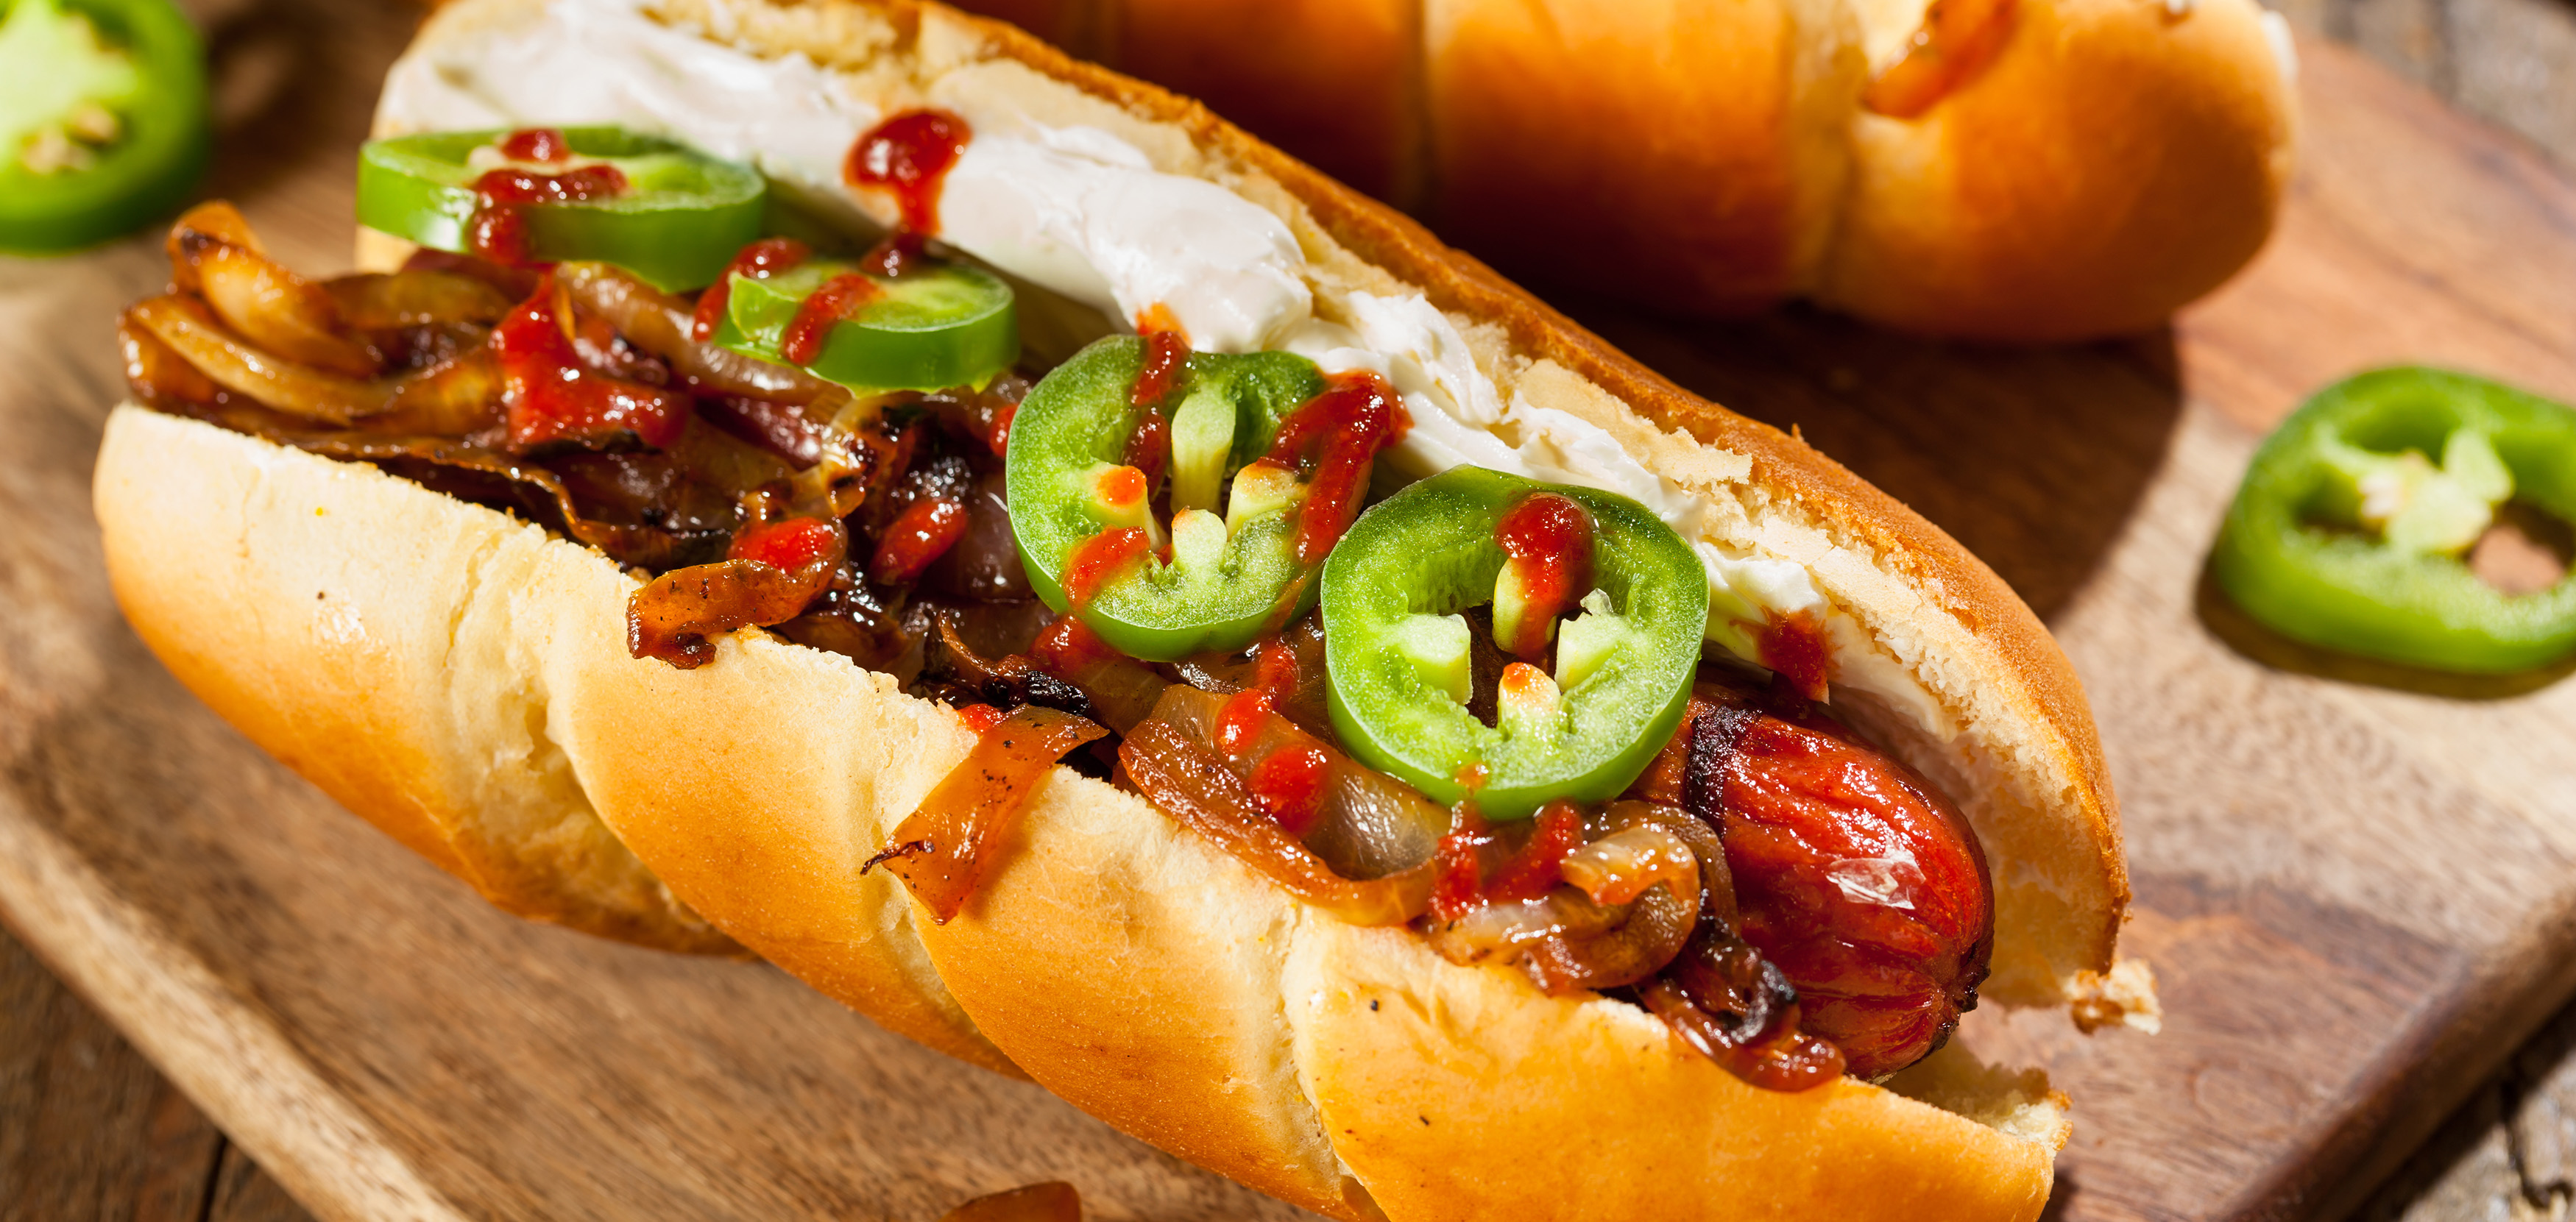 Seattle-style hot dog - Wikipedia